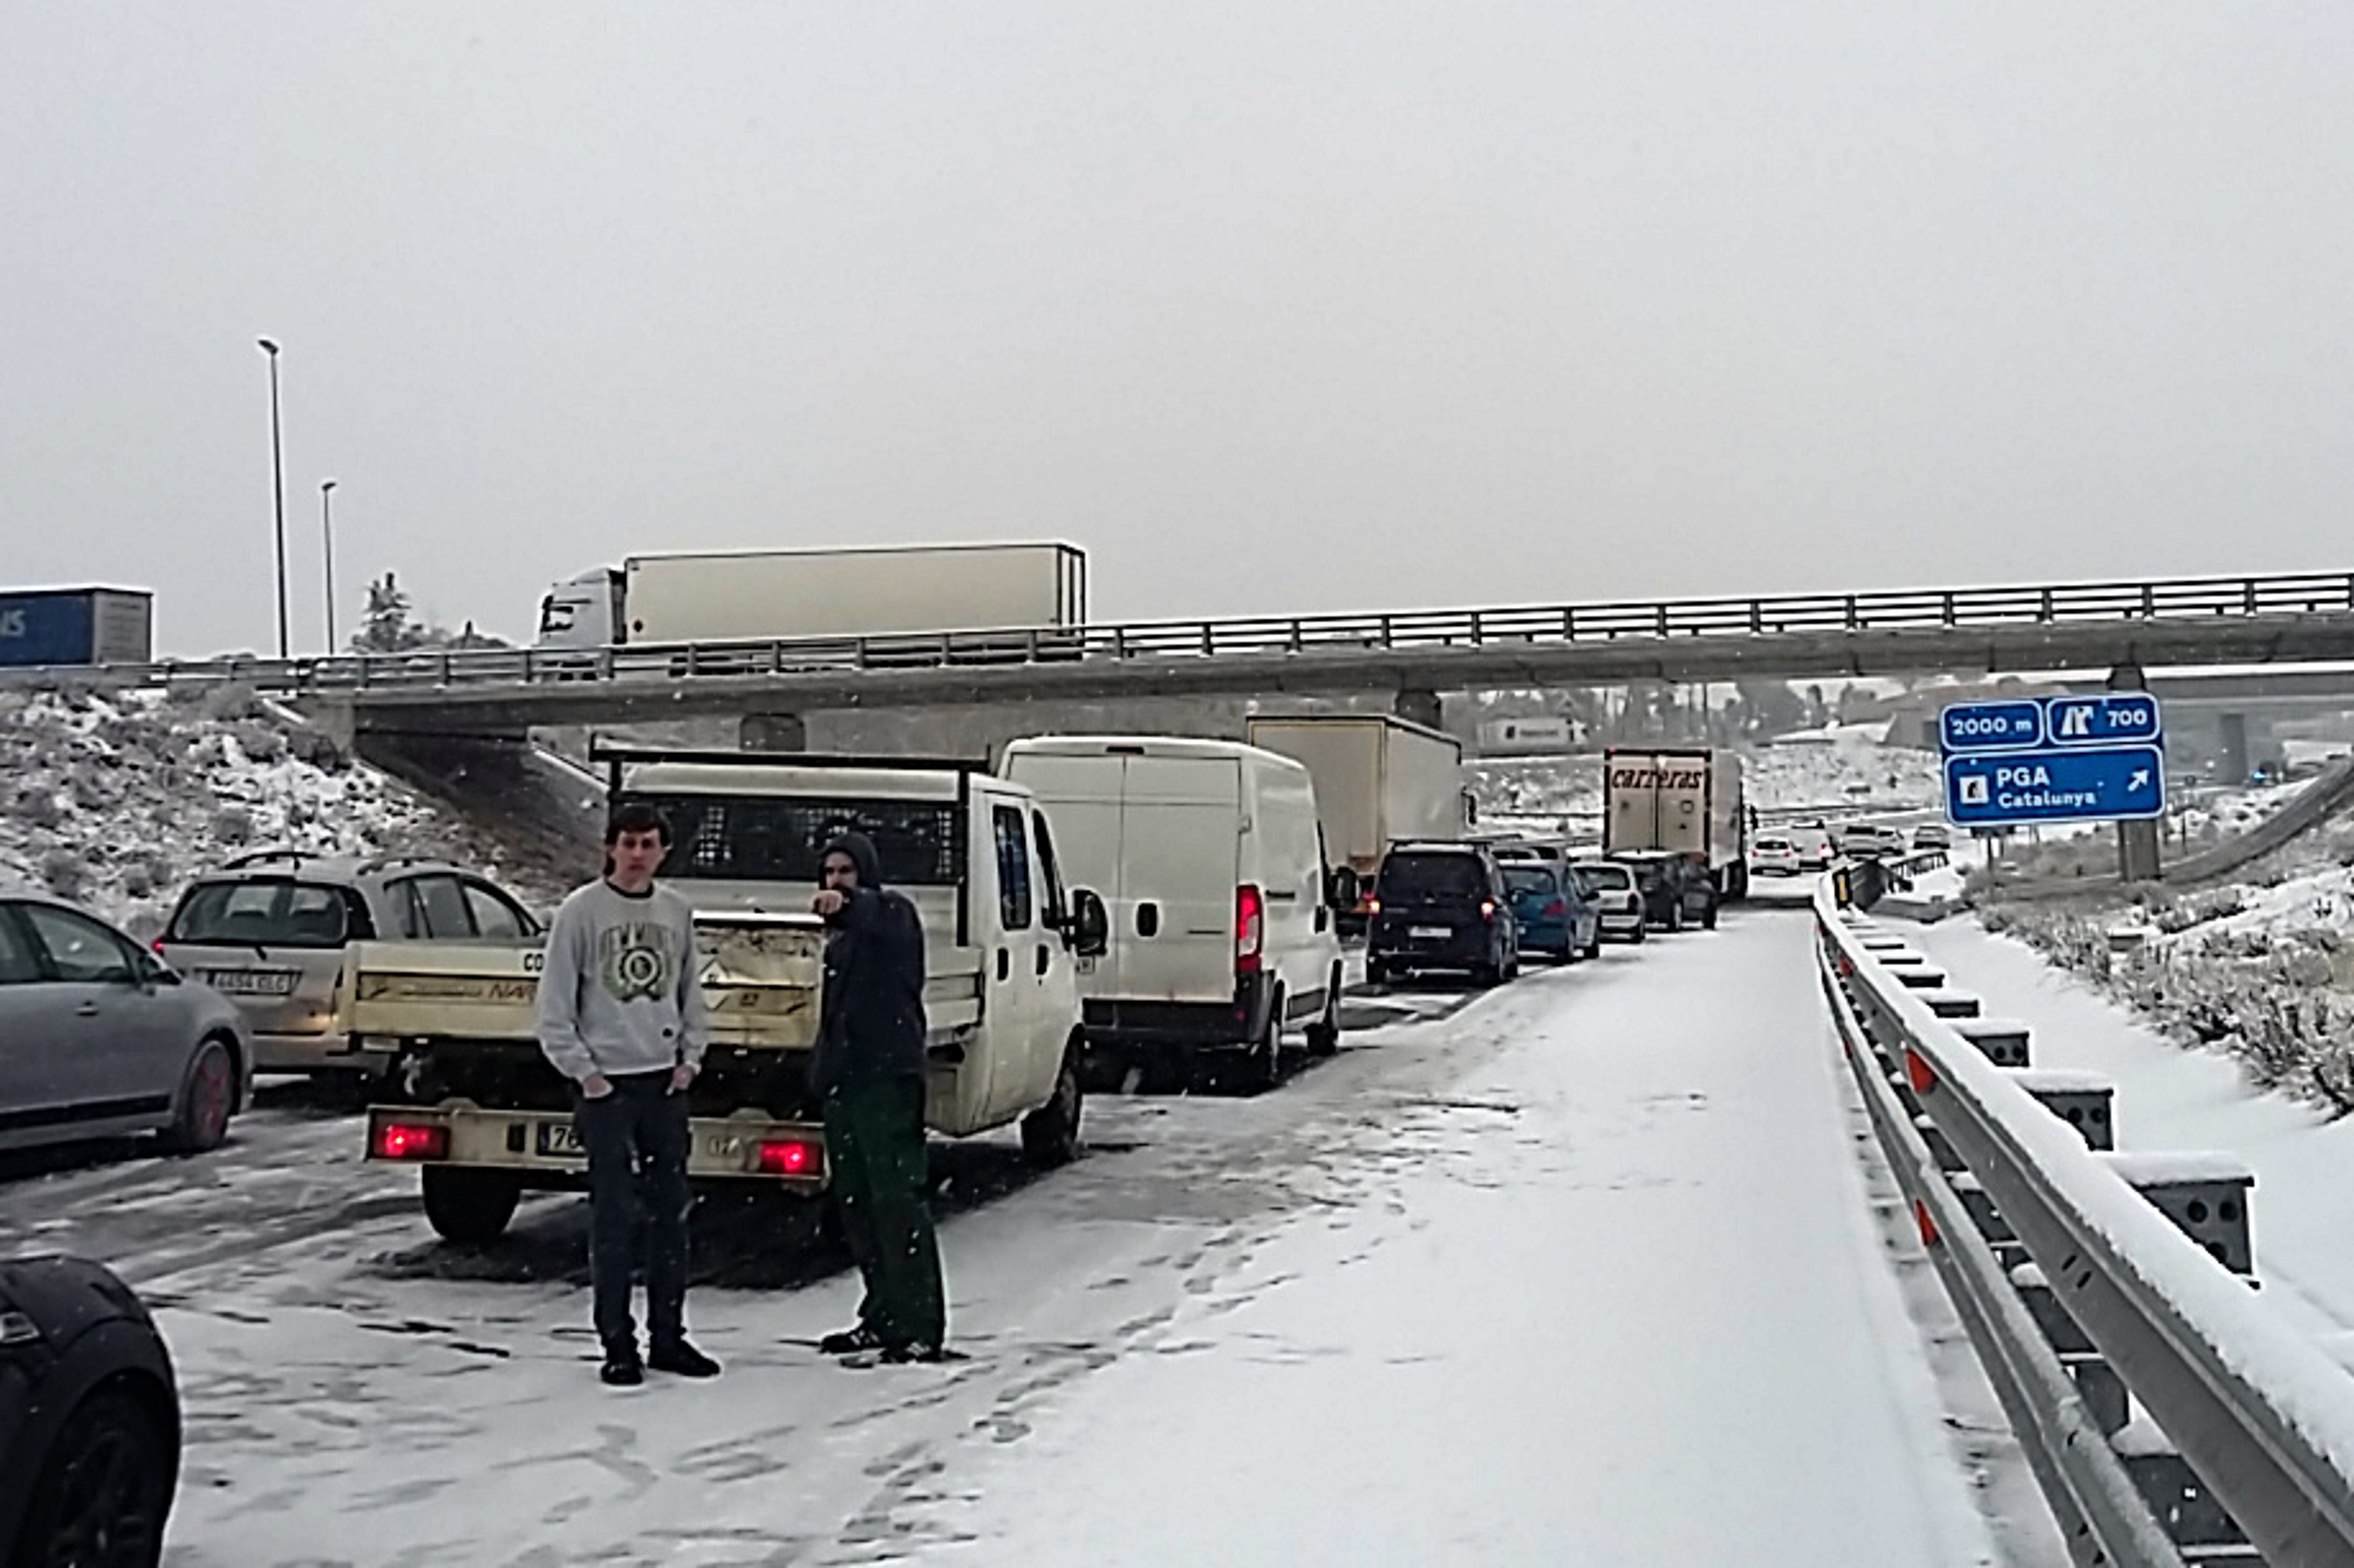 Autopistas activa el dispositivo de seguridad vial por previsión de nieve en cotas bajas